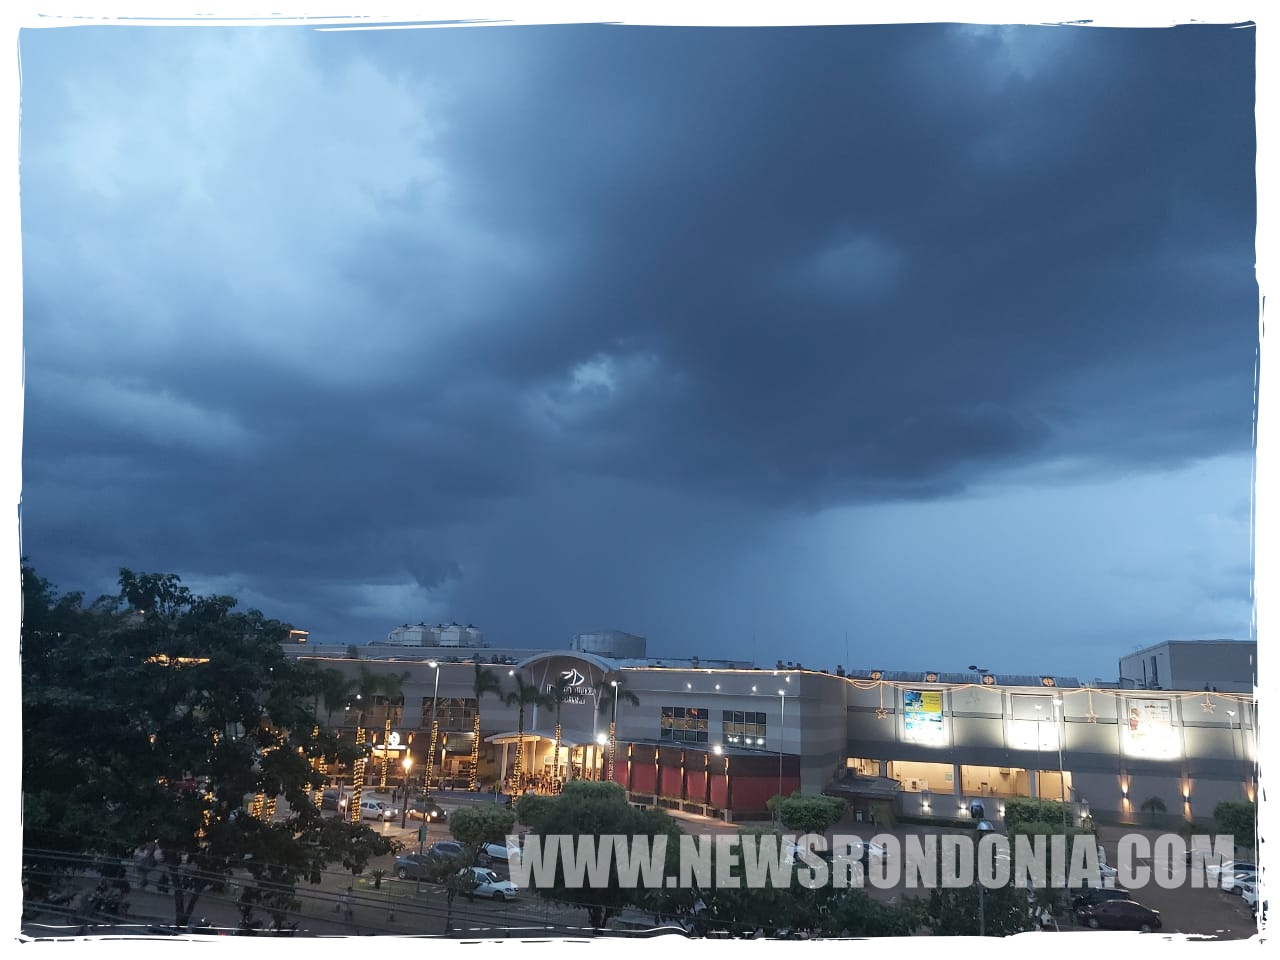 IMPRESSIONANTE: Internauta registra em foto início de chuva na capital - News Rondônia